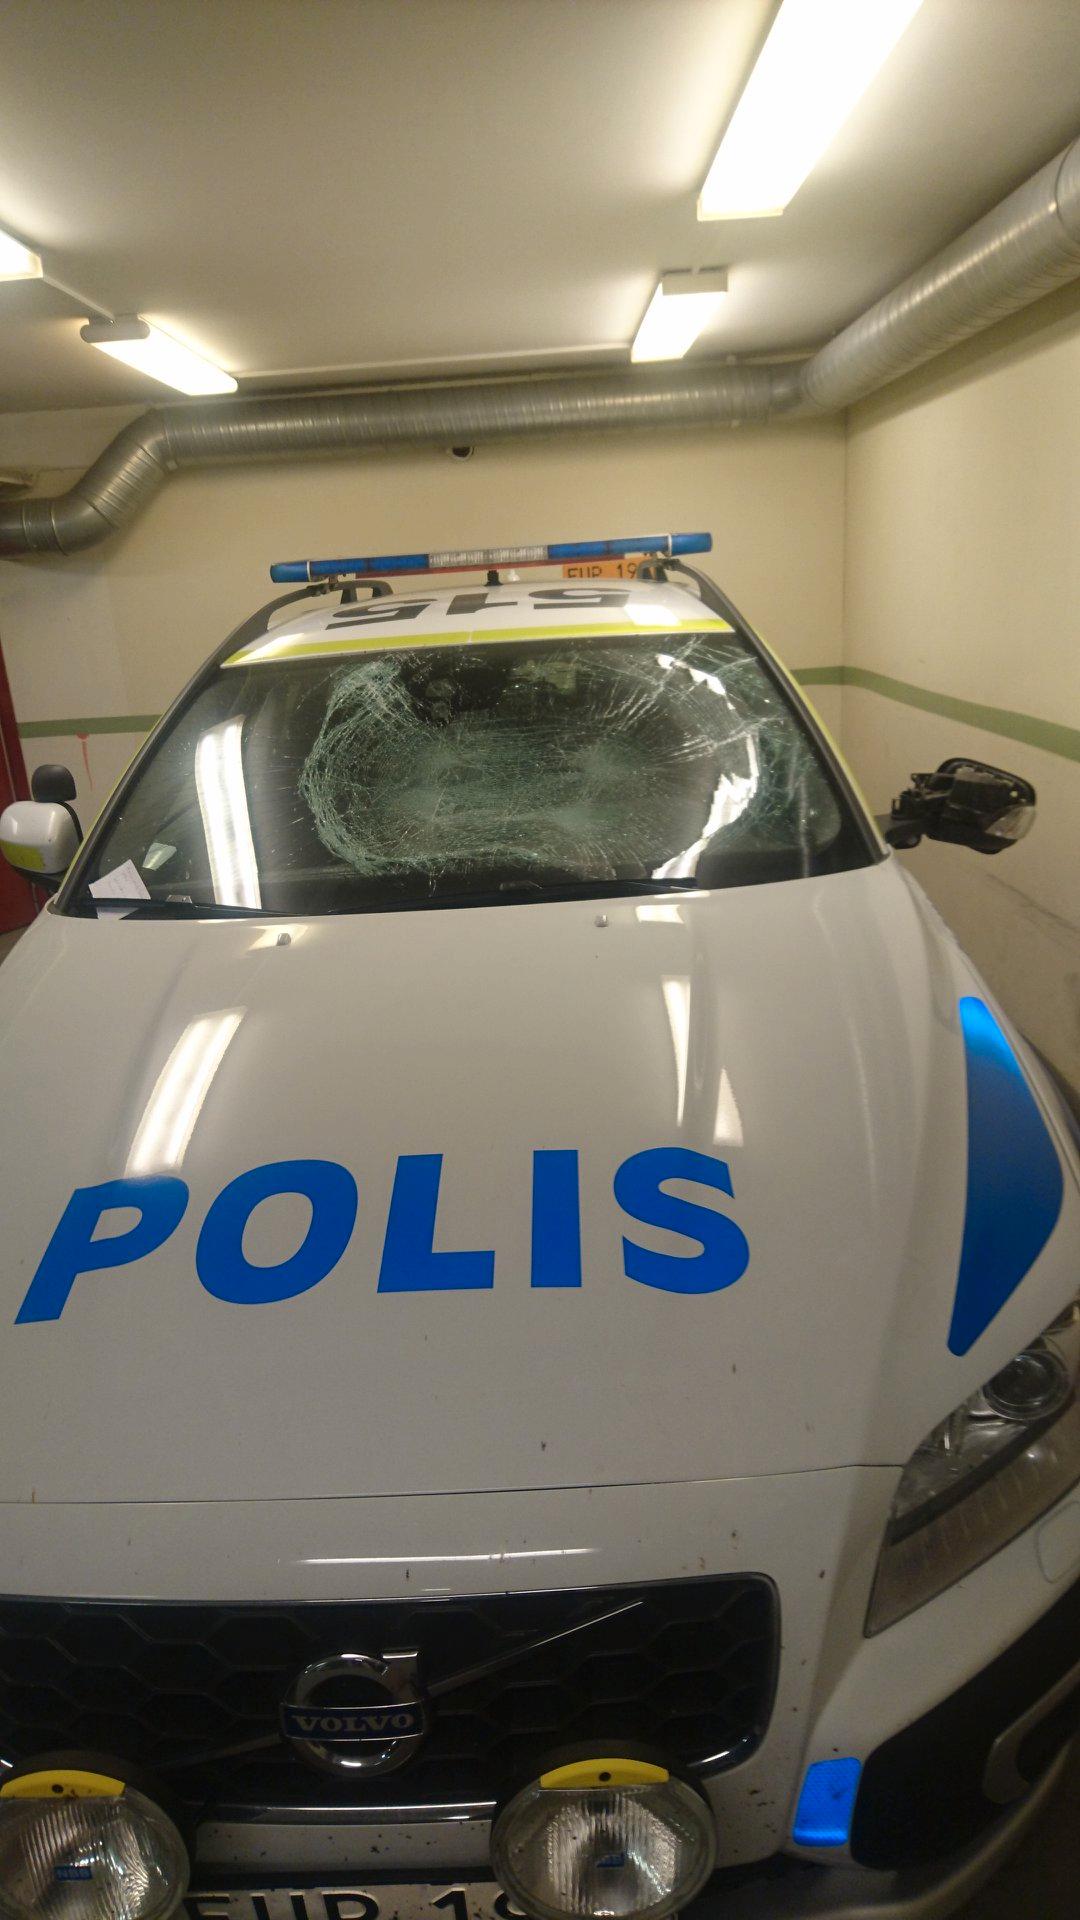 Polisens bil blev vandaliserad när de var på uttryckning.